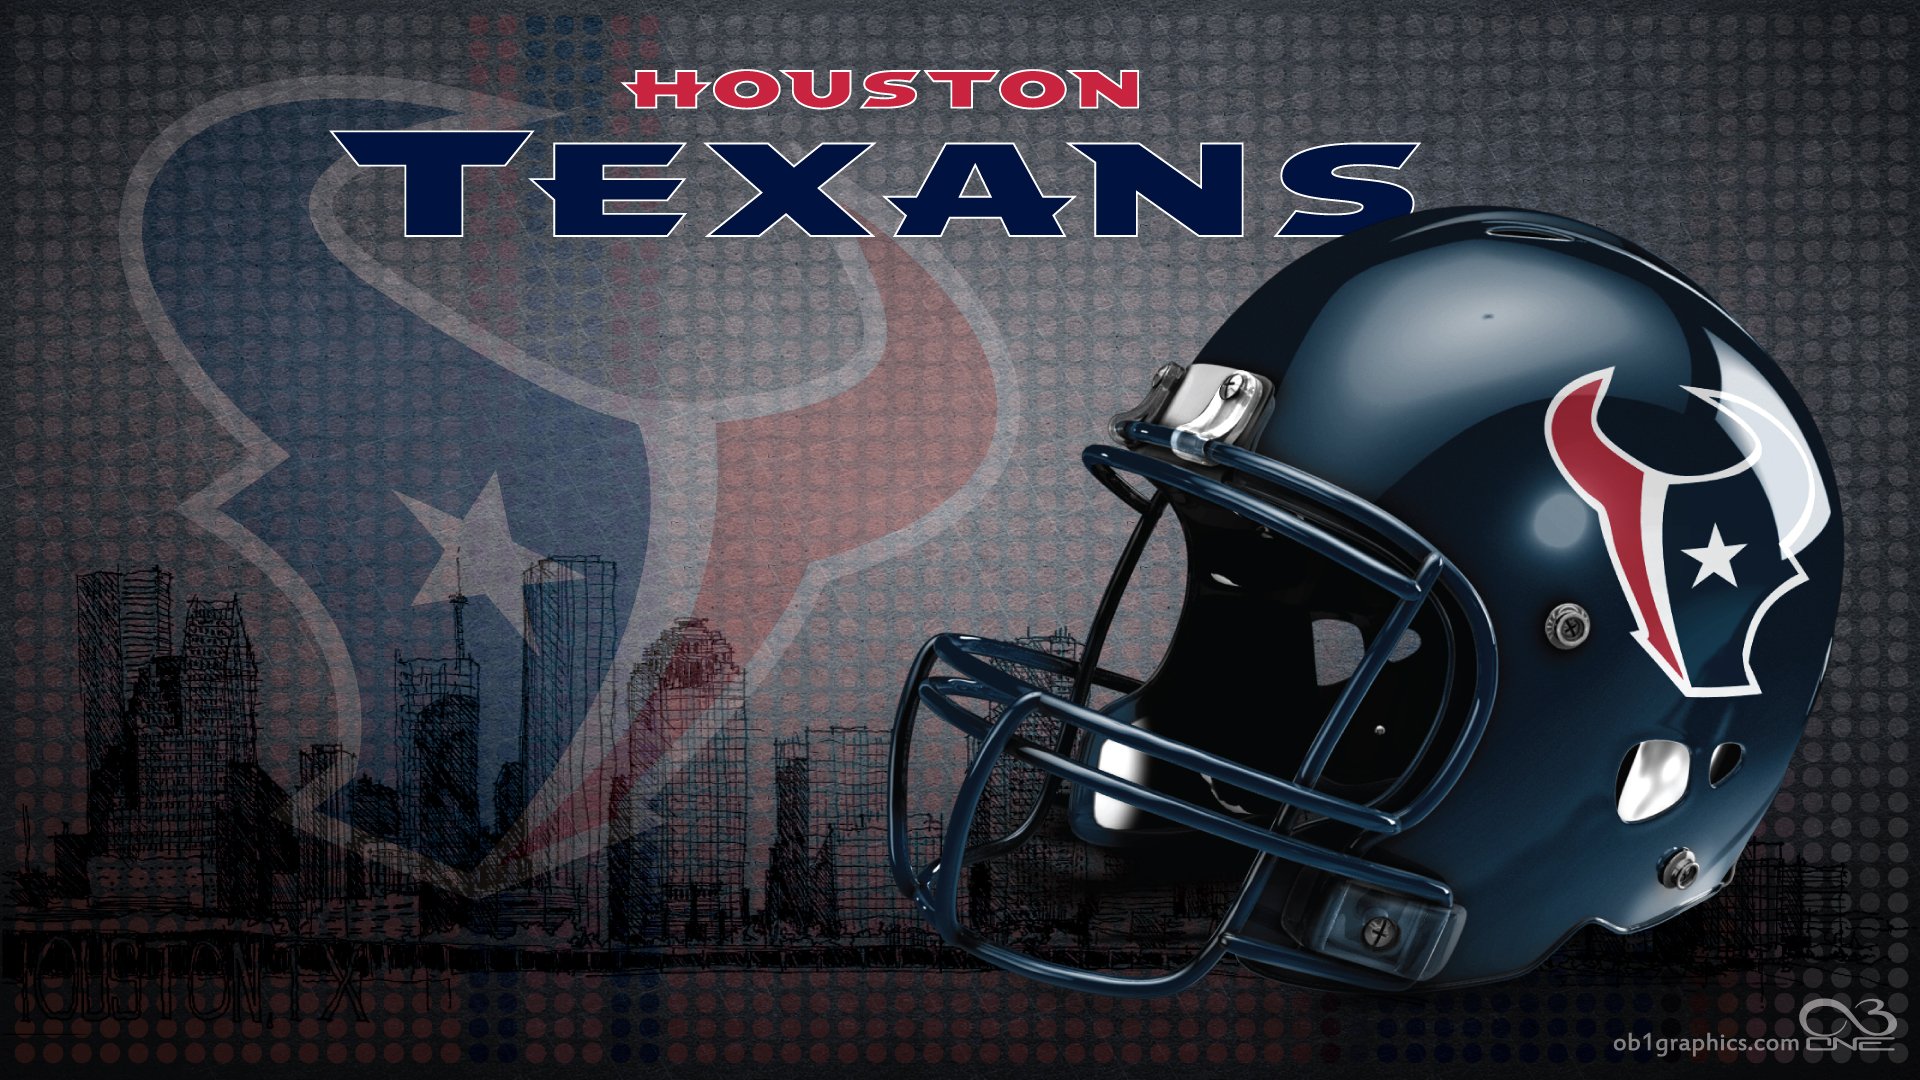 Houston Texans by texasOB1 1920 x 1080